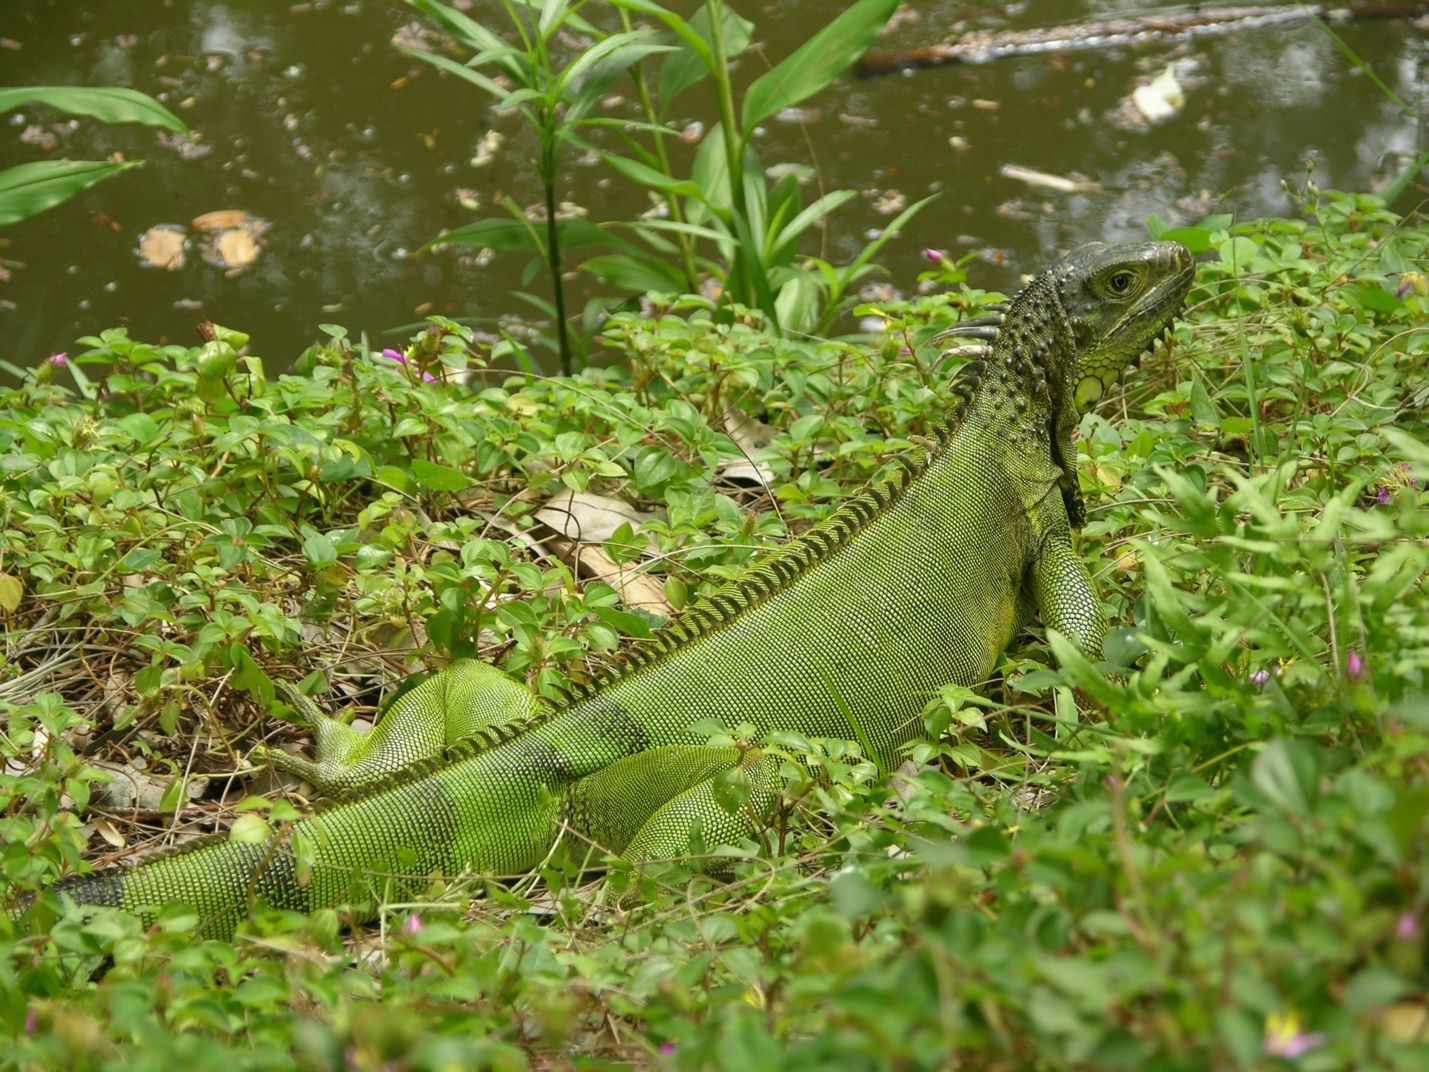 Las iguanas verdes (Iguana iguana) juveniles y adultas pueden ser de color verde, pero muchos adultos no [lo] son.